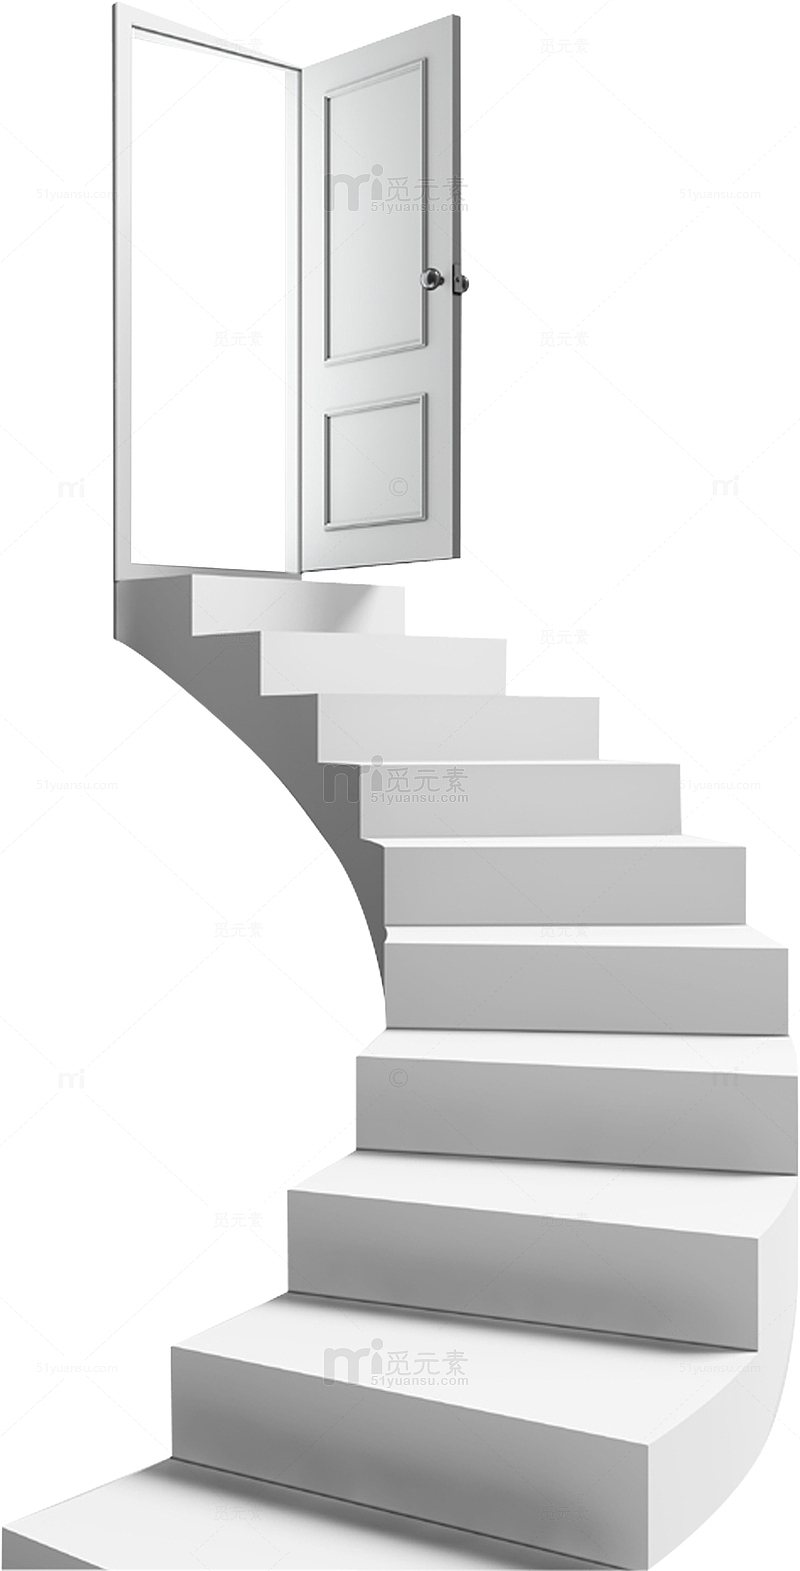 灰色的楼梯建筑物